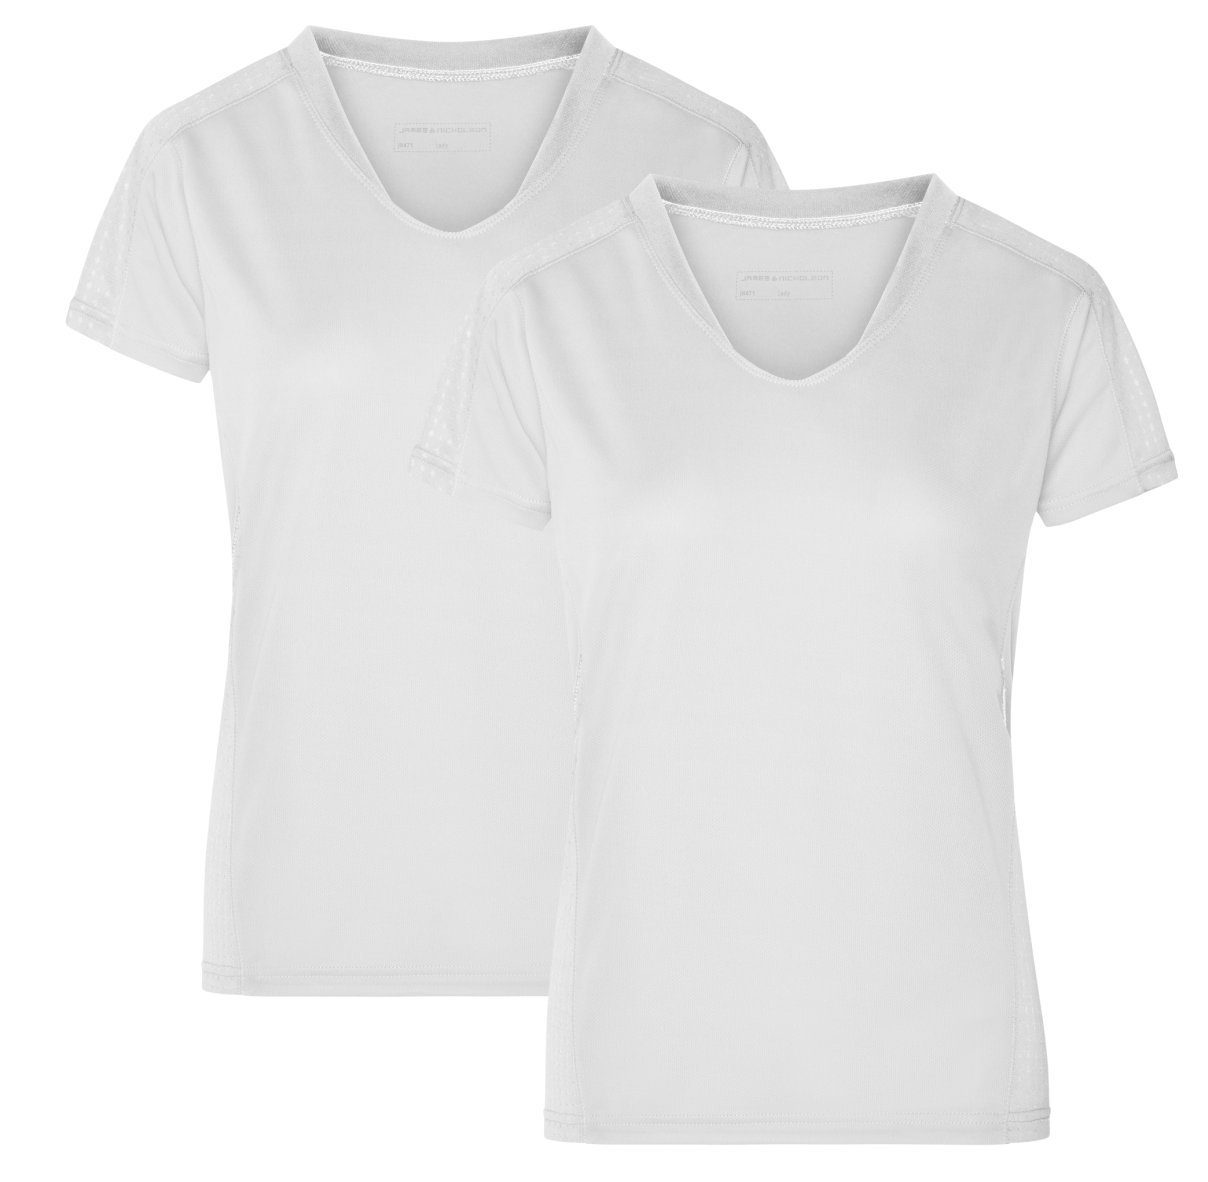 James & Nicholson Laufshirt Doppelpack Damen Kurzarm Laufshirt Running T-Shirt JN471 (Doppelpack, 2 Stück) Atmungsaktiv und Feuchtigkeitsregulierend white/white